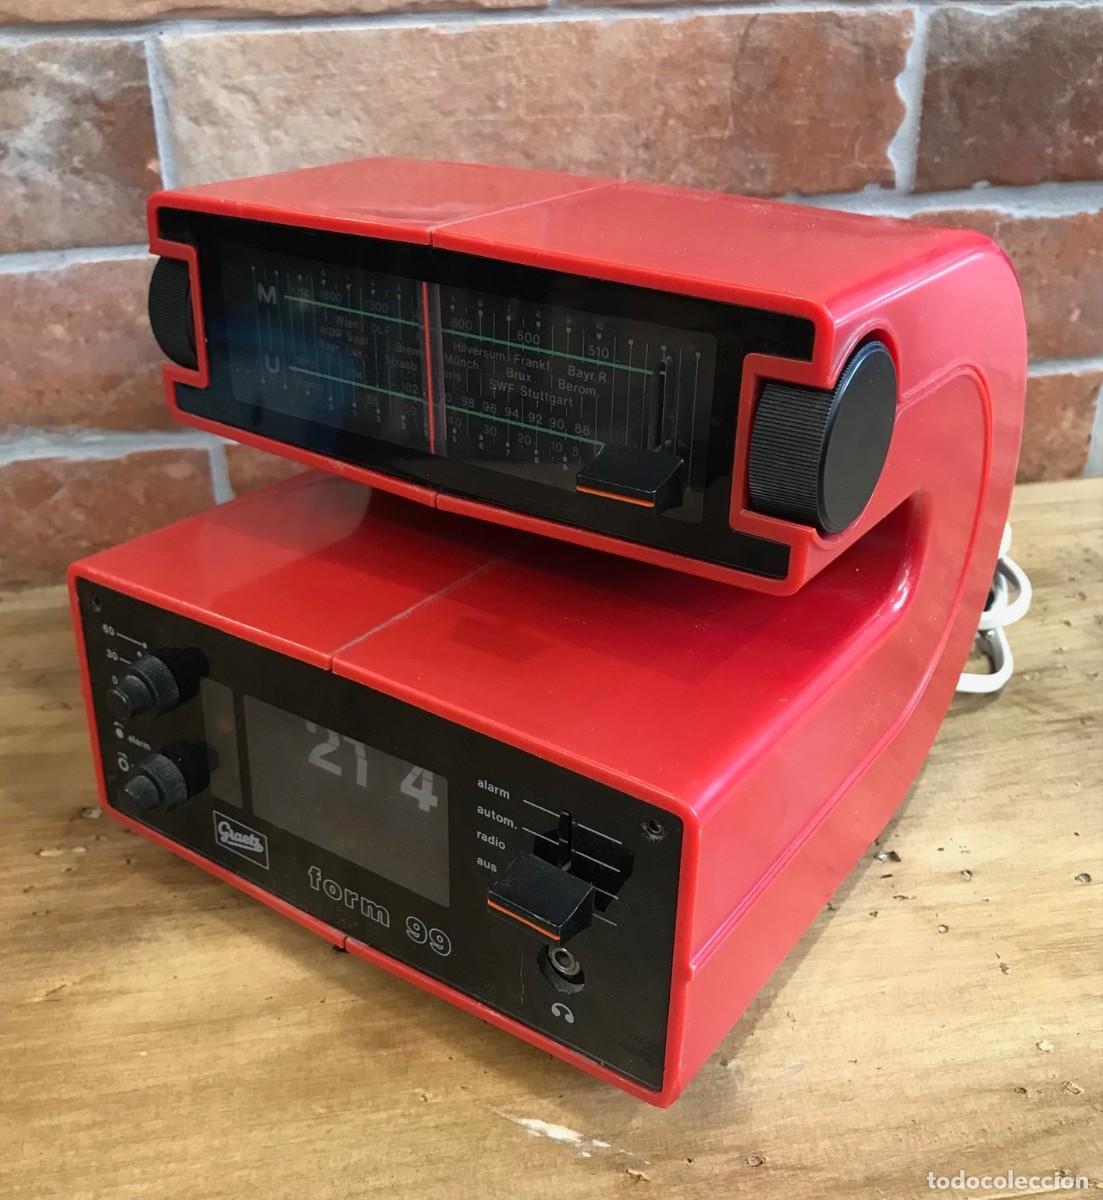 Graetz Form 99, radio reloj despertador de placas. Vintage flip clock radio,  space age.